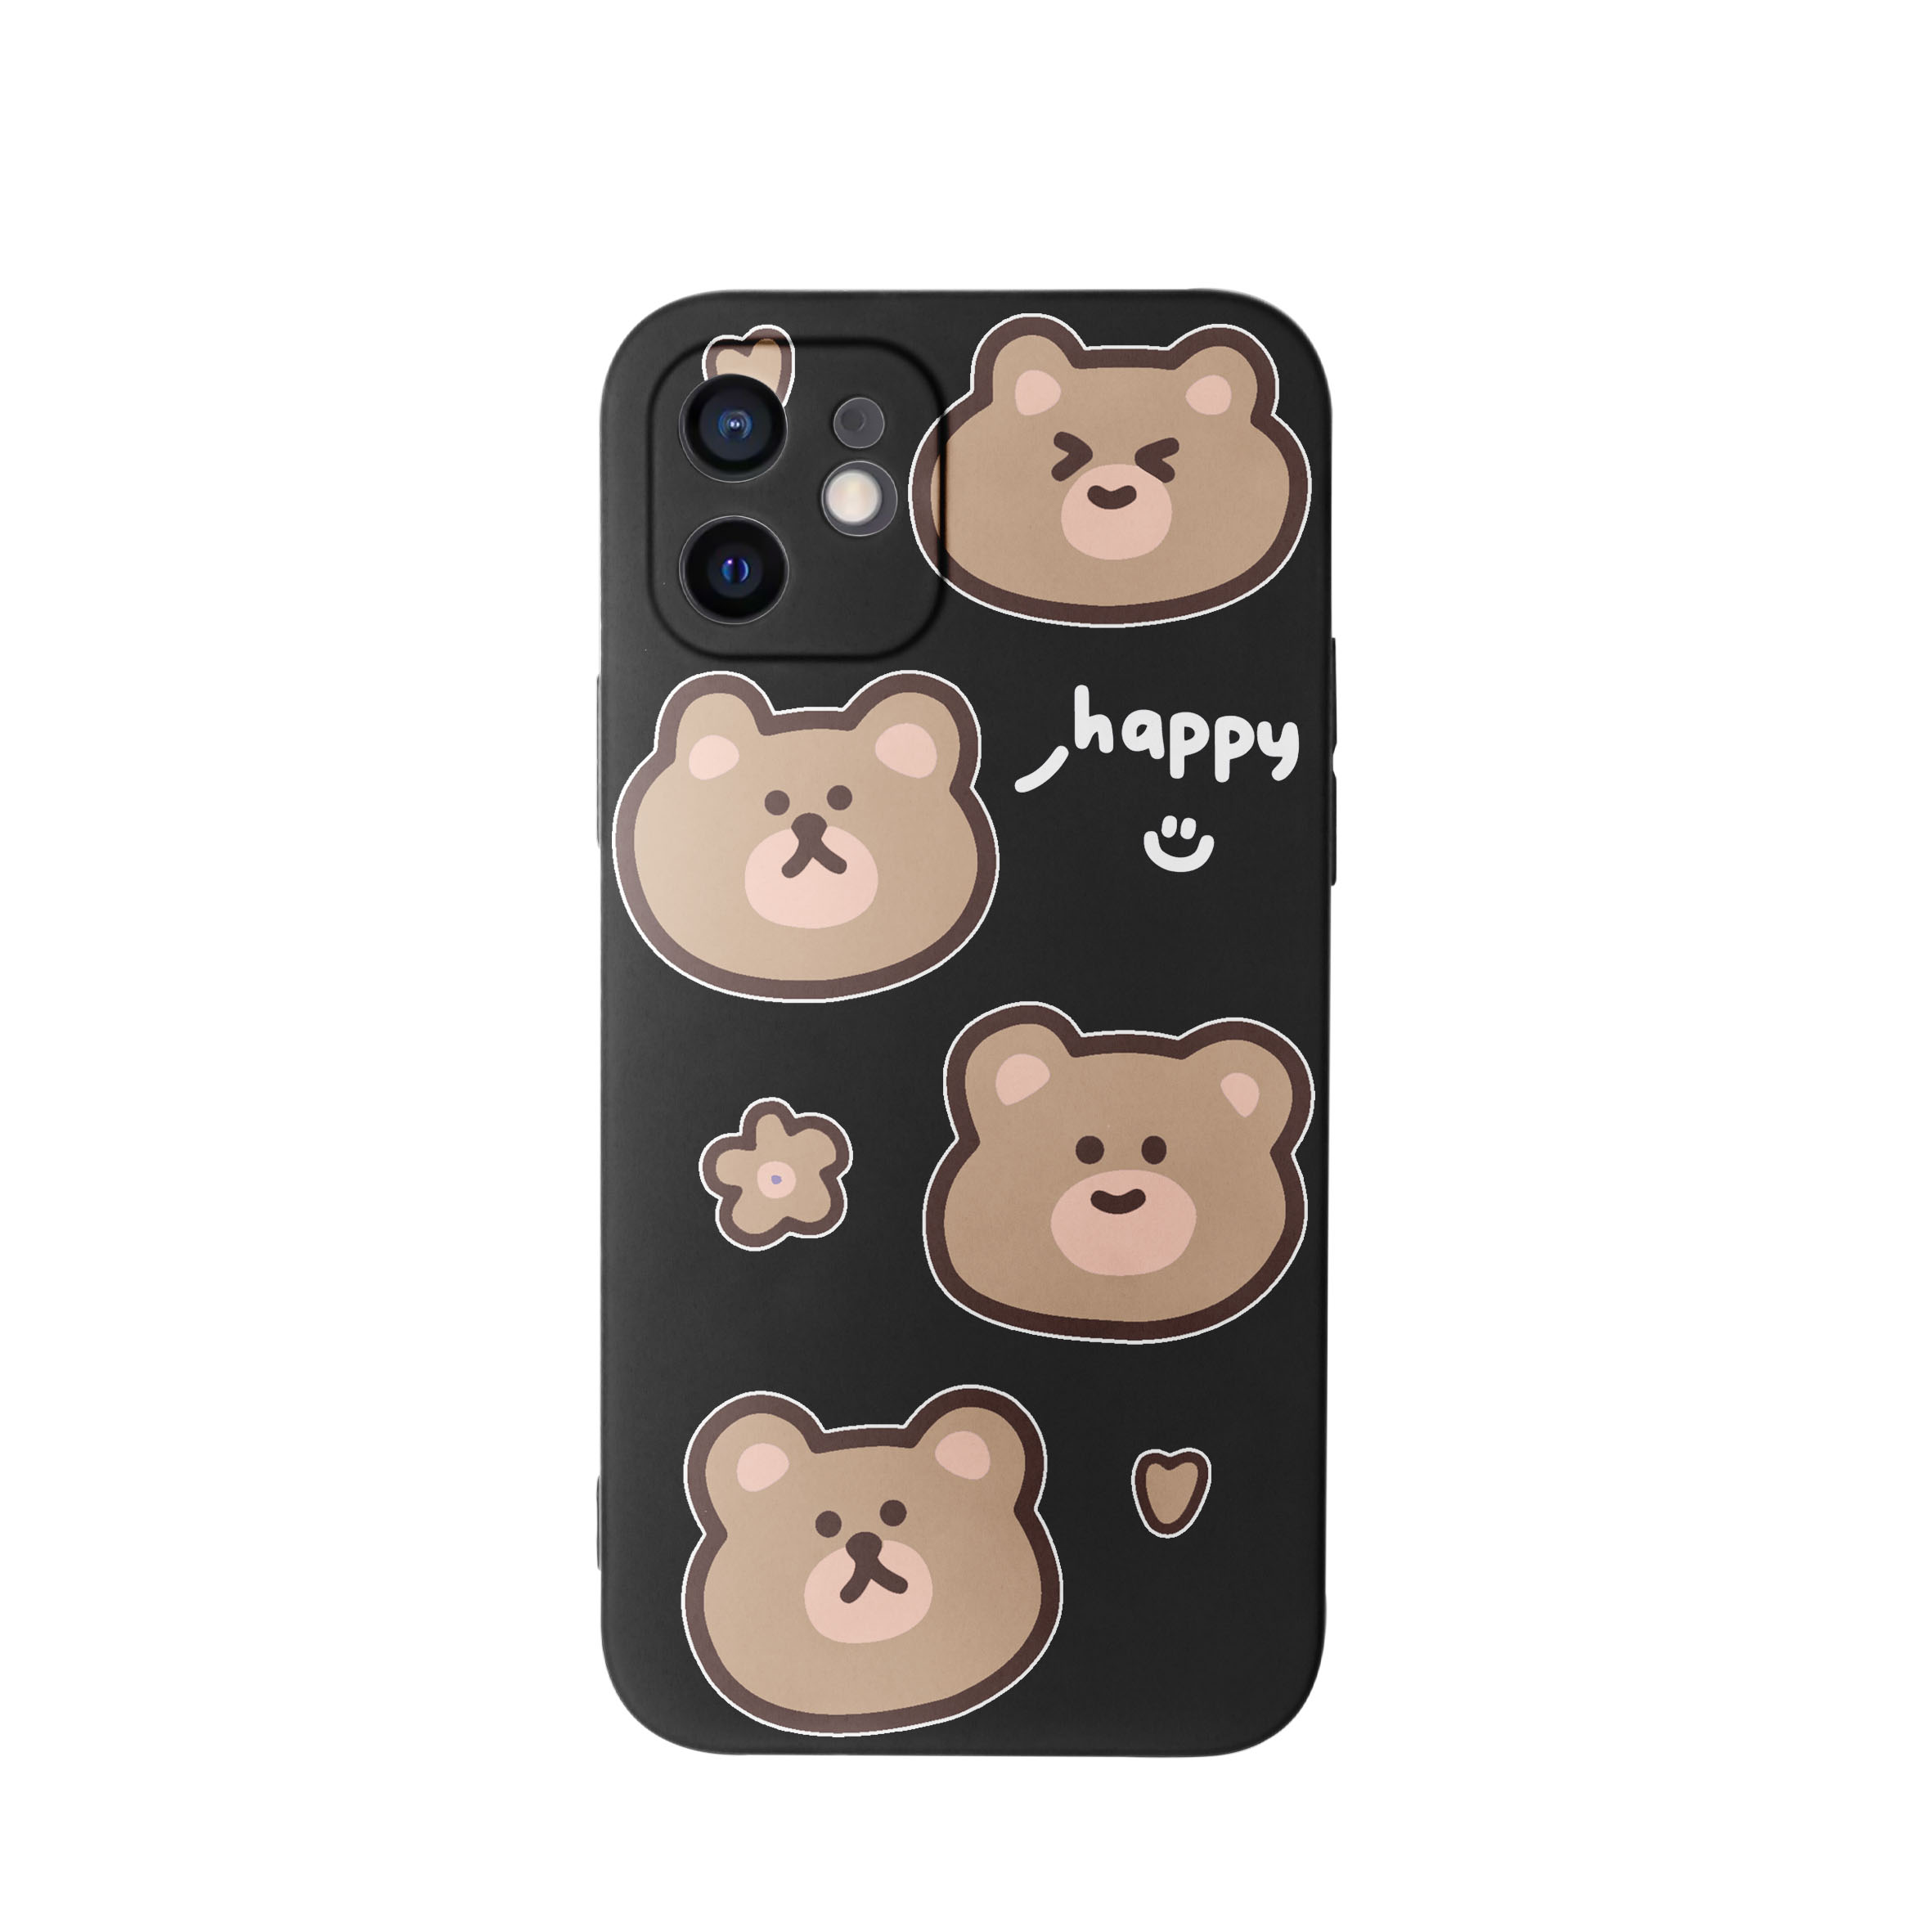 کاور طرح خرس های کیوت کد f4013 مناسب برای گوشی موبایل اپل iphone 11